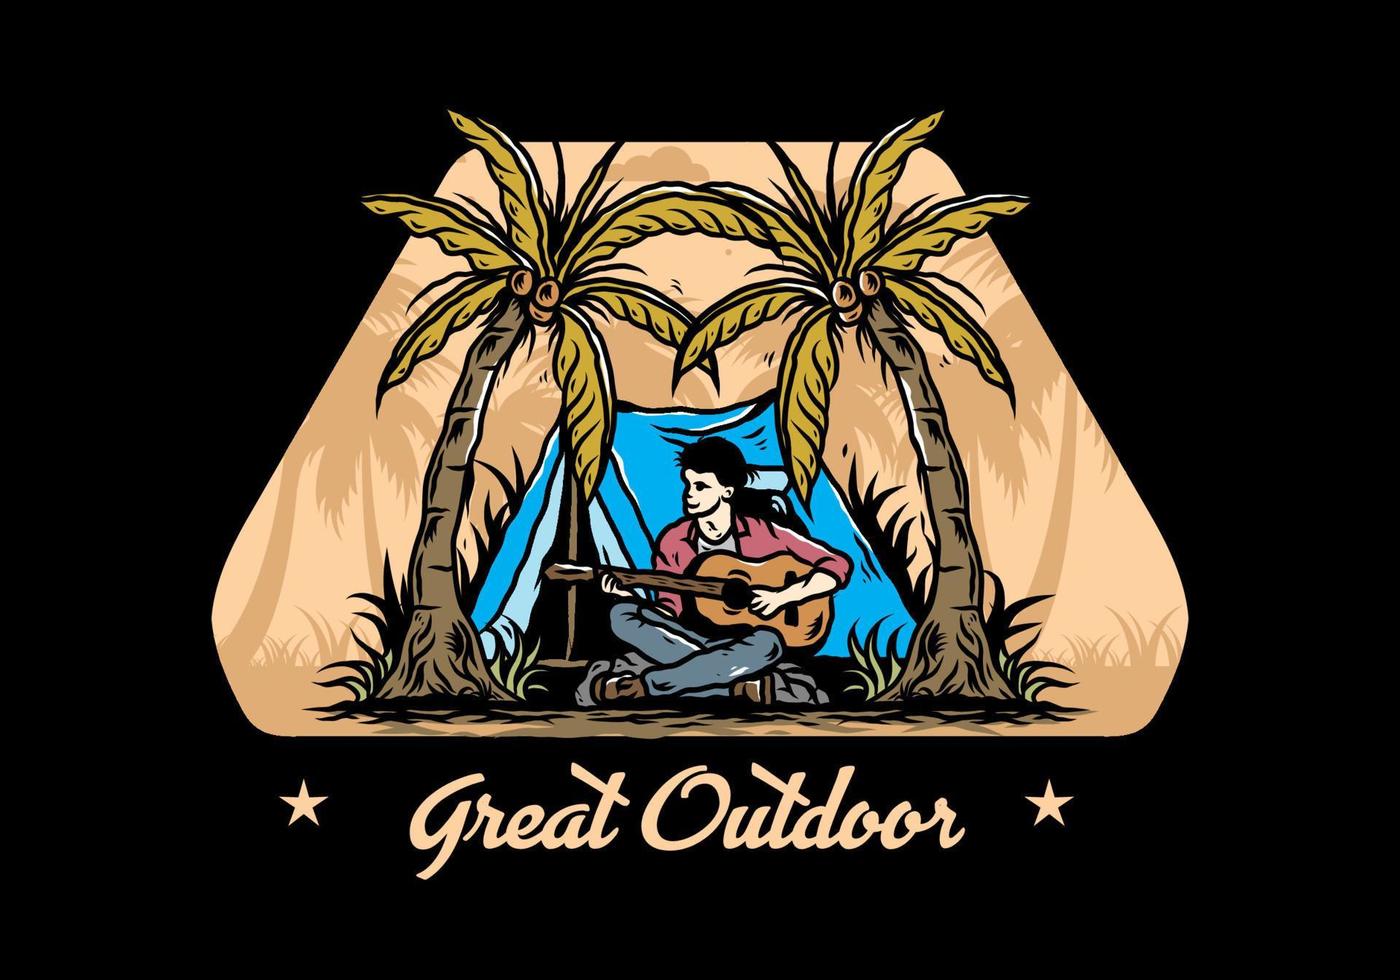 mann mit gitarre vor zelt zwischen kokosnussbaumillustration vektor